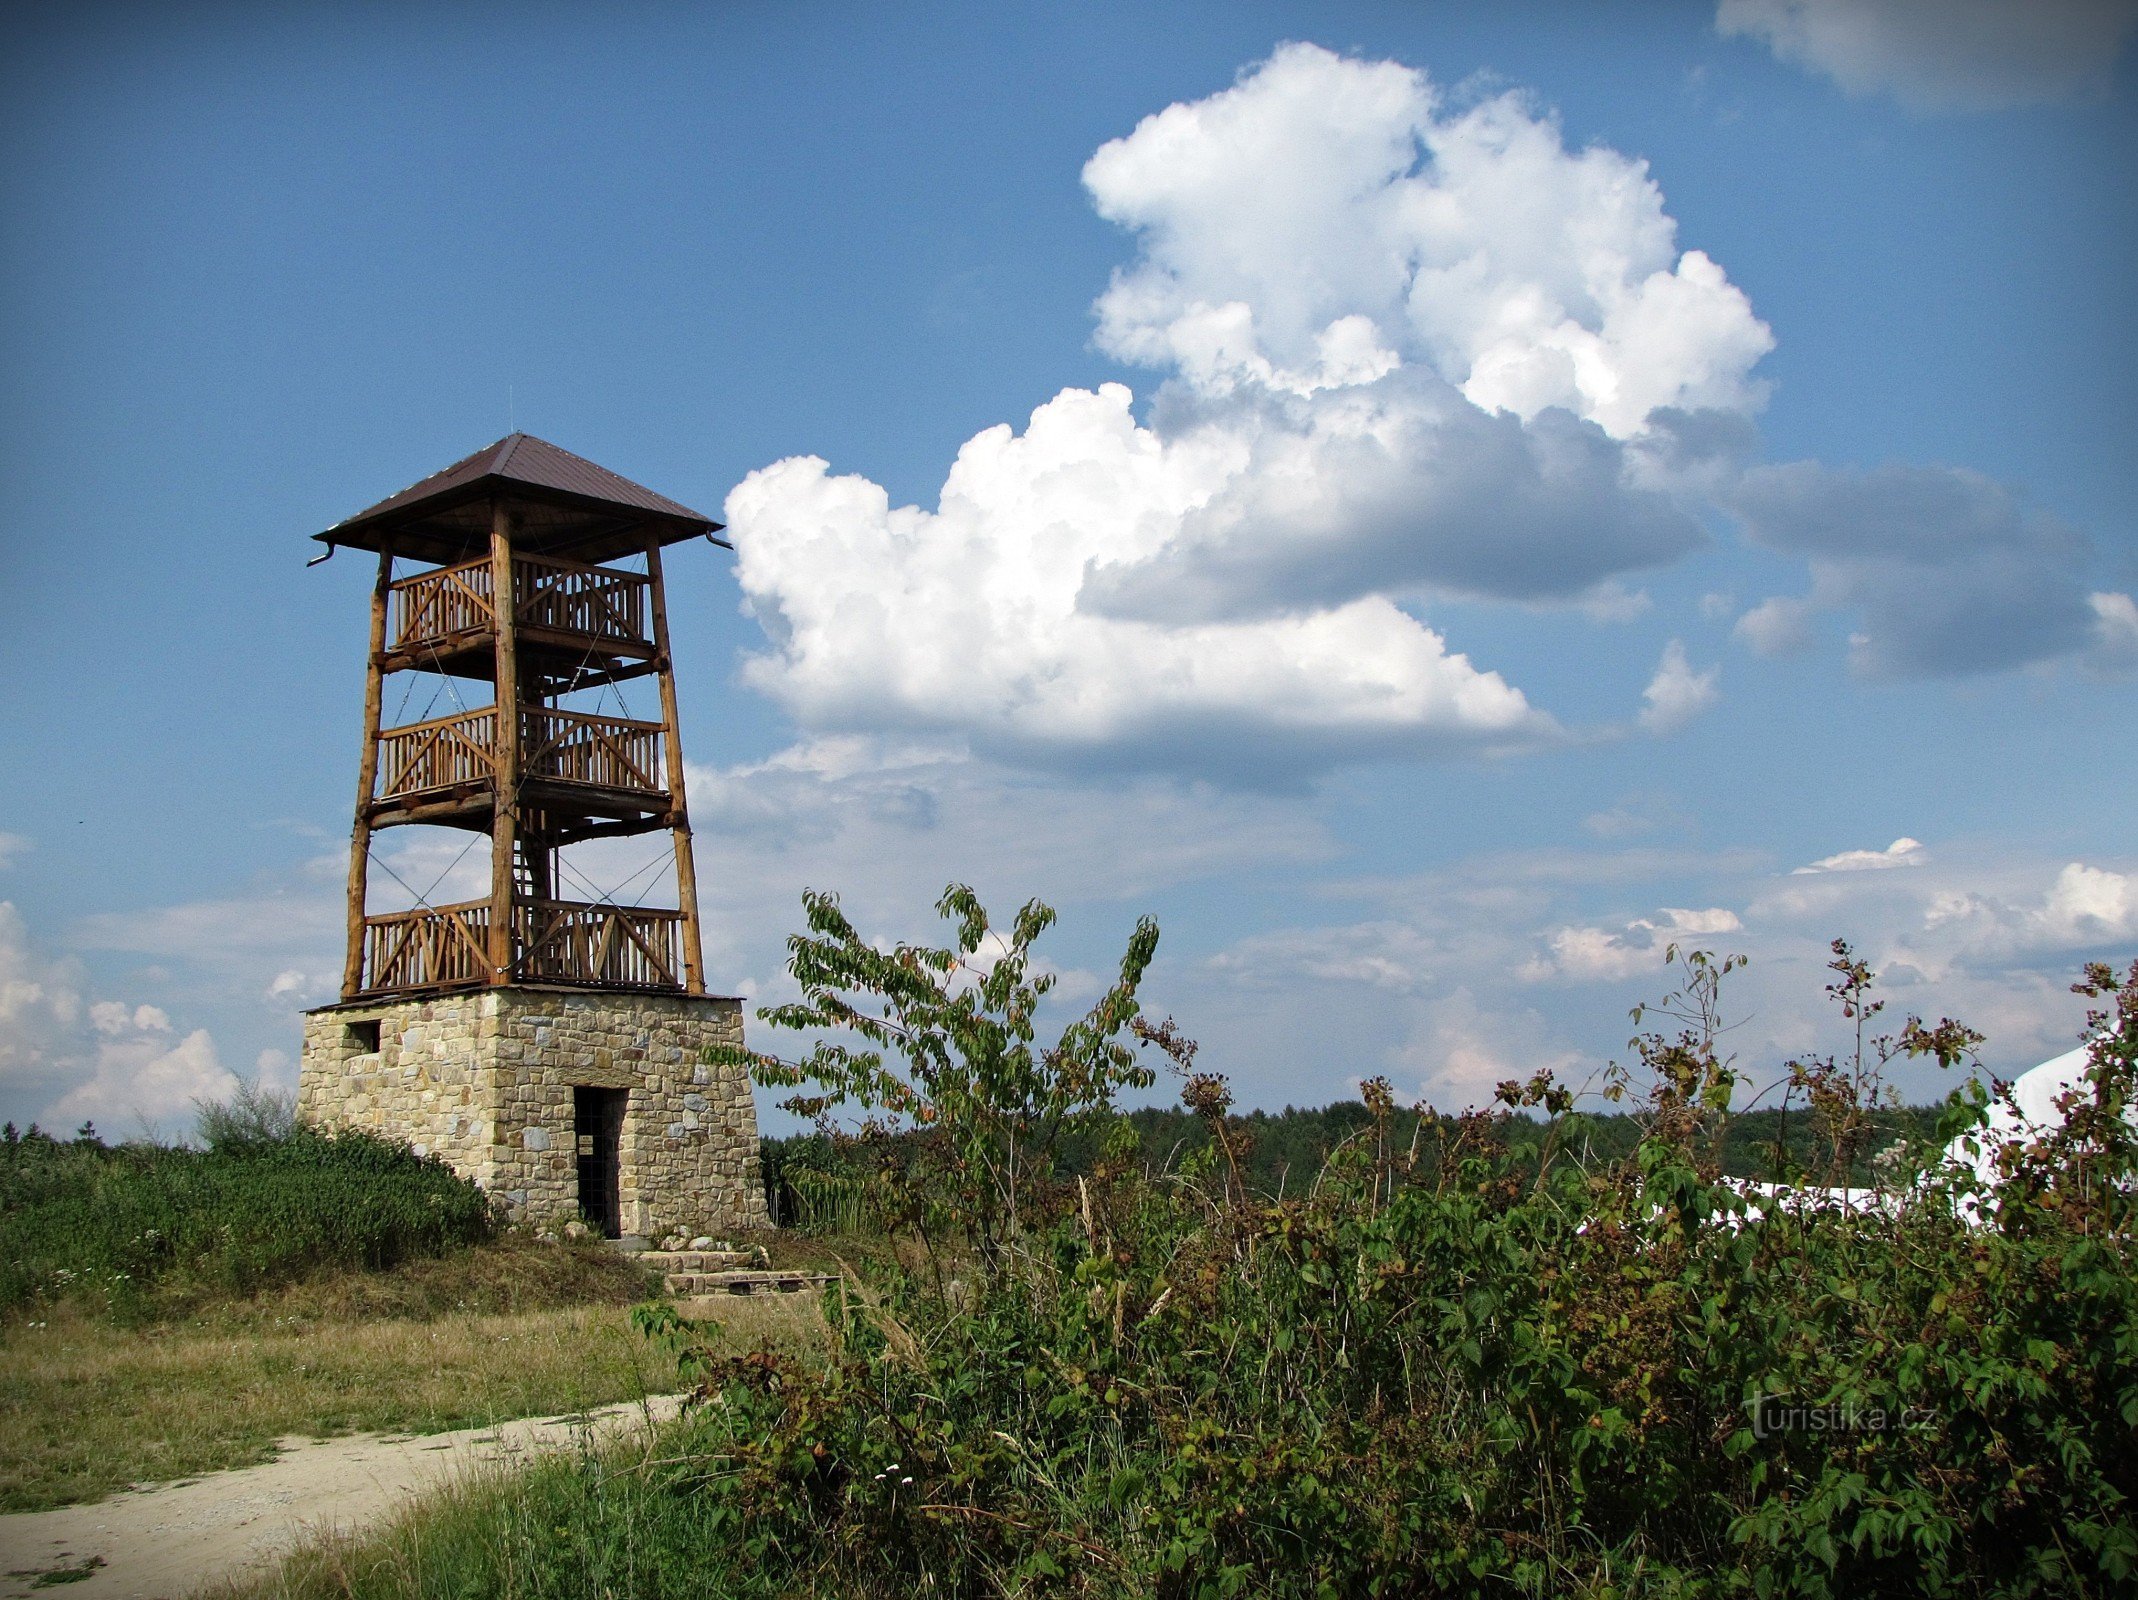 Hostišová - khu vực tháp quan sát và quán rượu